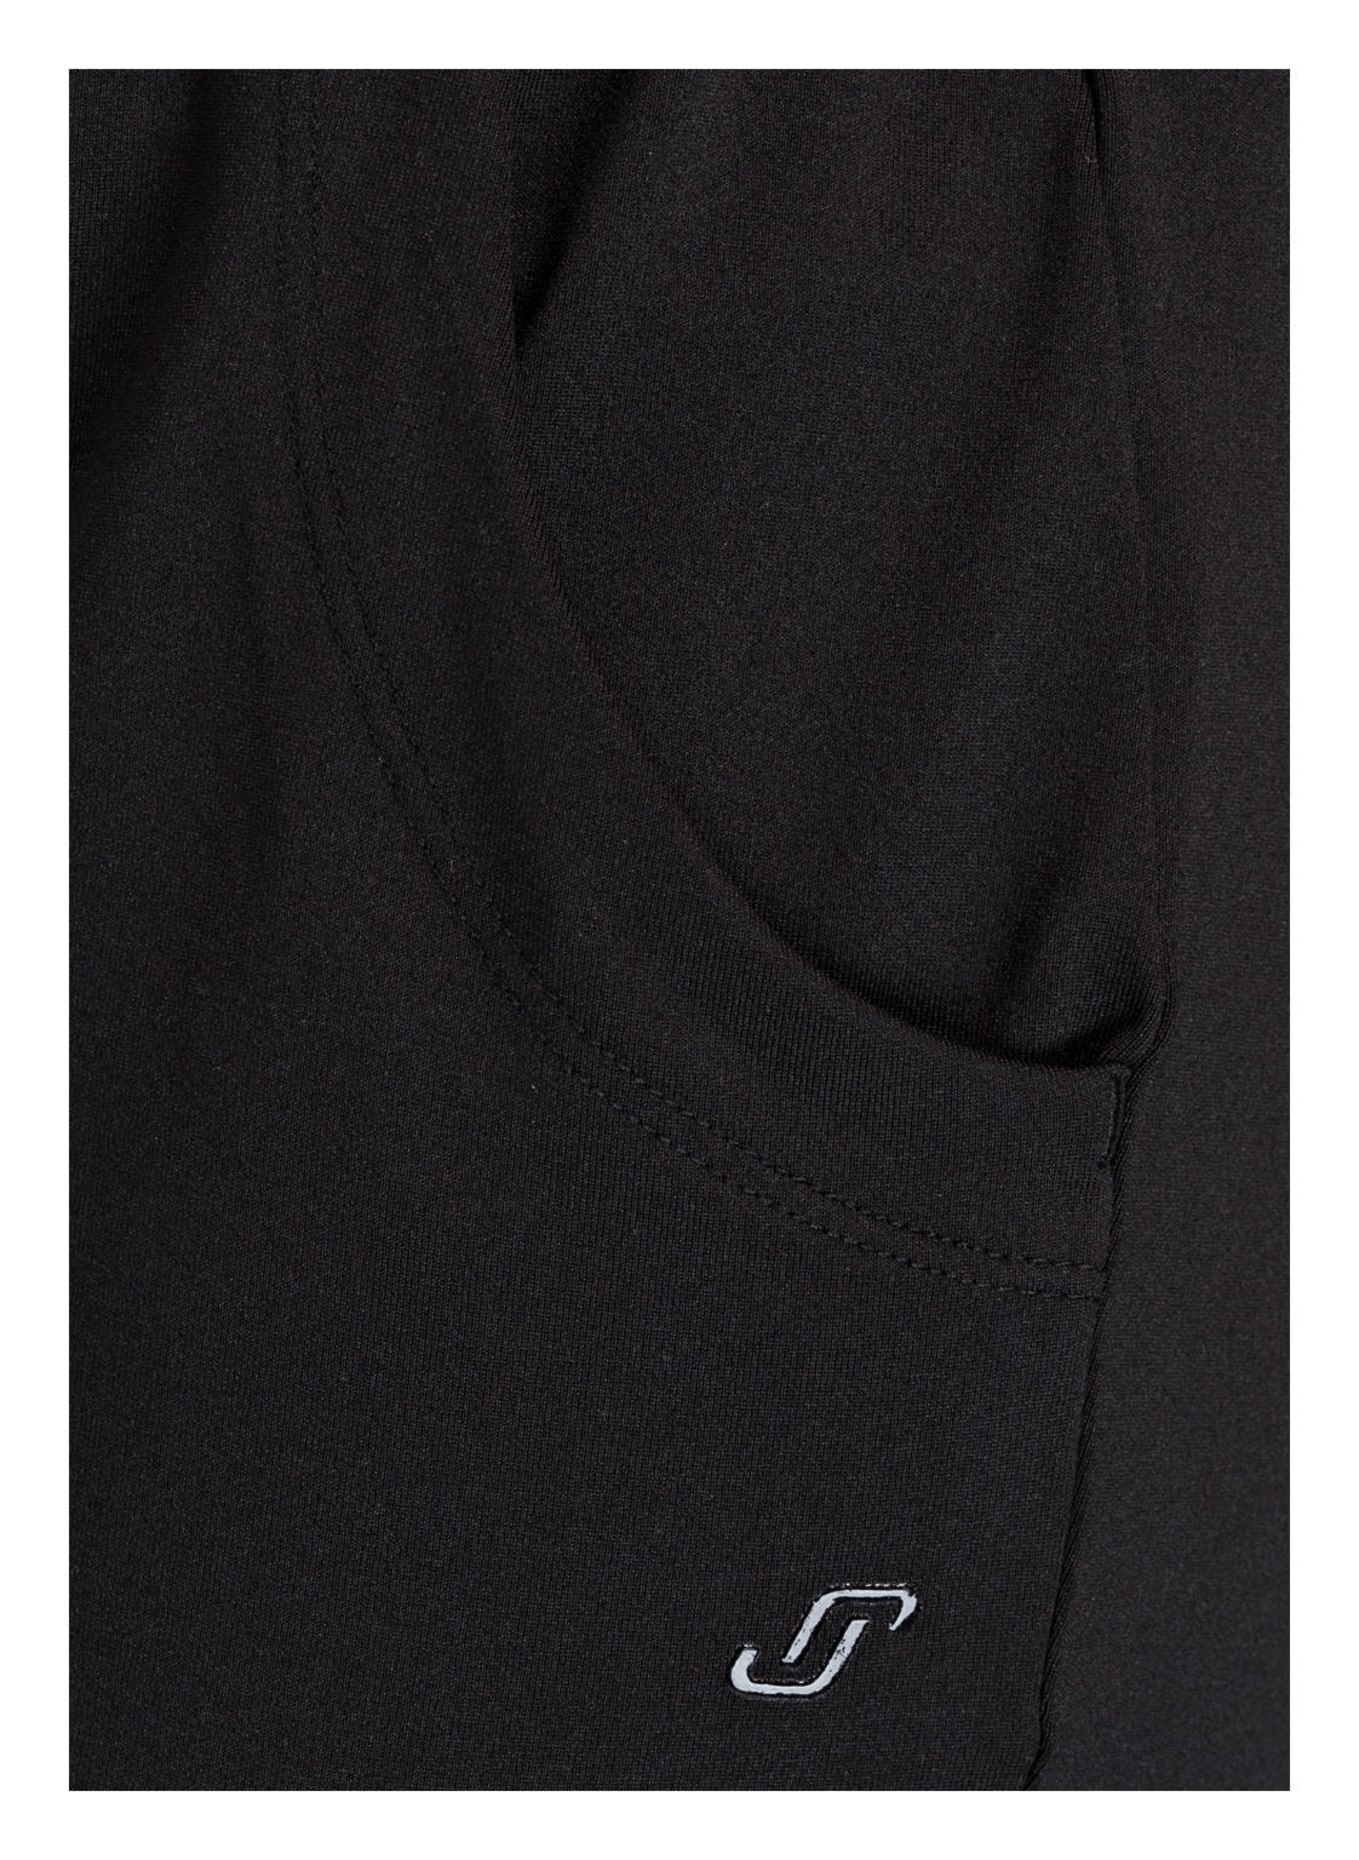 JOY sportswear 7/8 training pants NELA in 00700 black | Breuninger